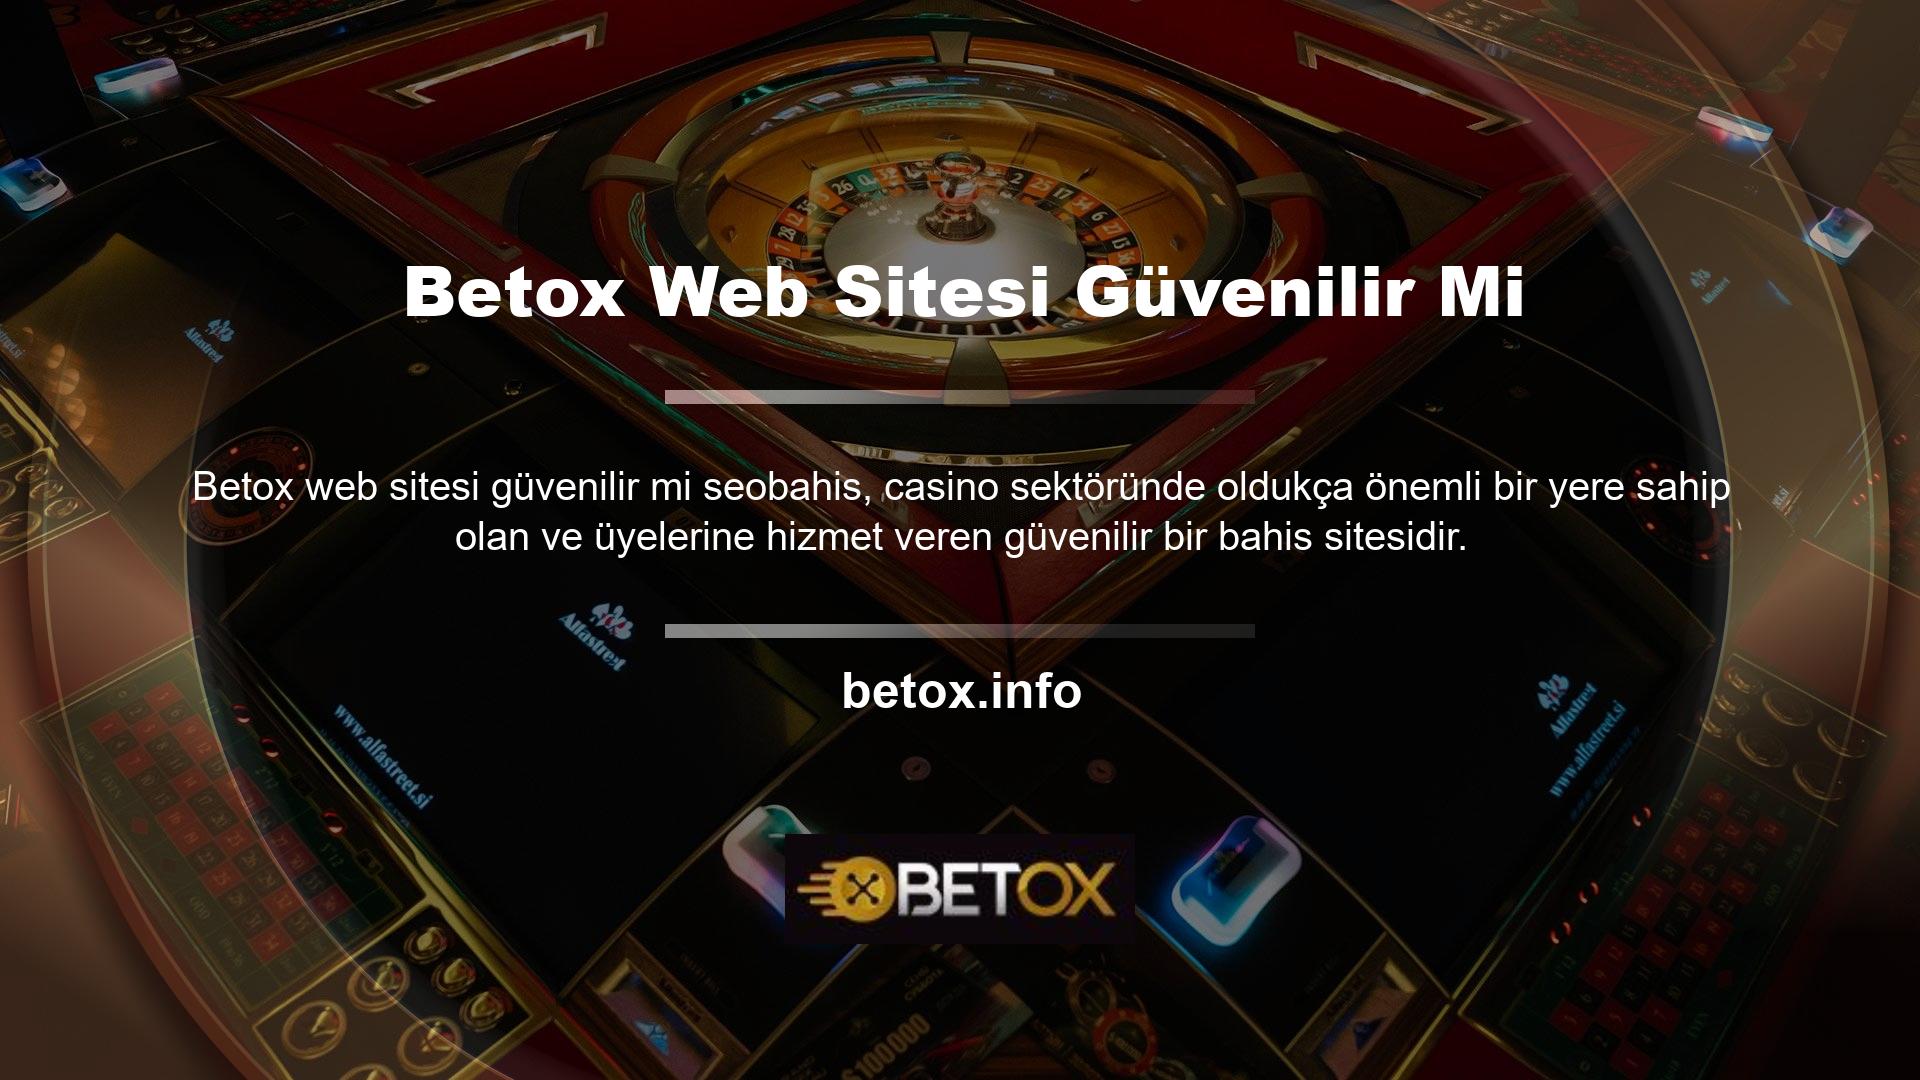 Peki Betox web sitesi güvenilir mi? Üye olan herkesin güvenebileceği bir sitedir